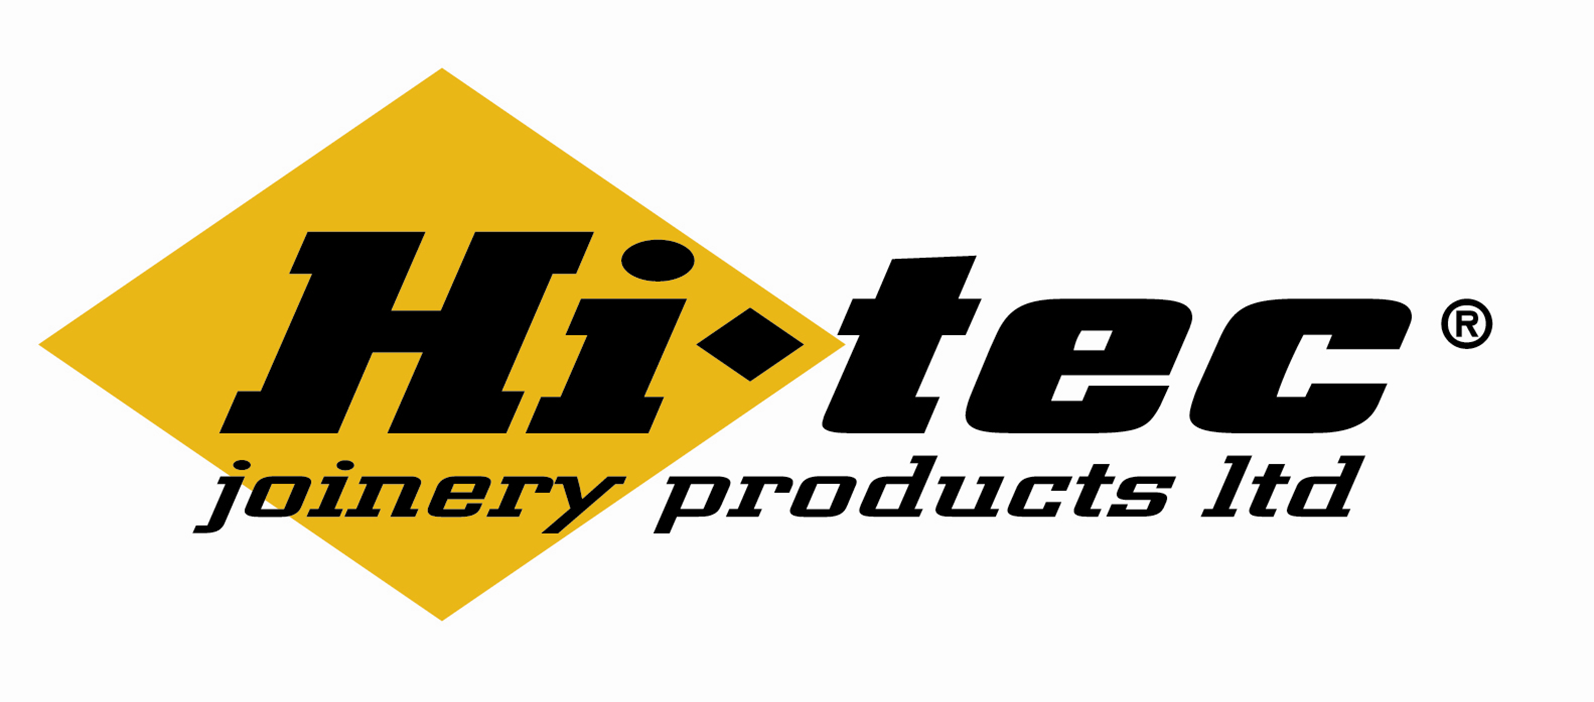 Hi-tec Joinery Products Ltd